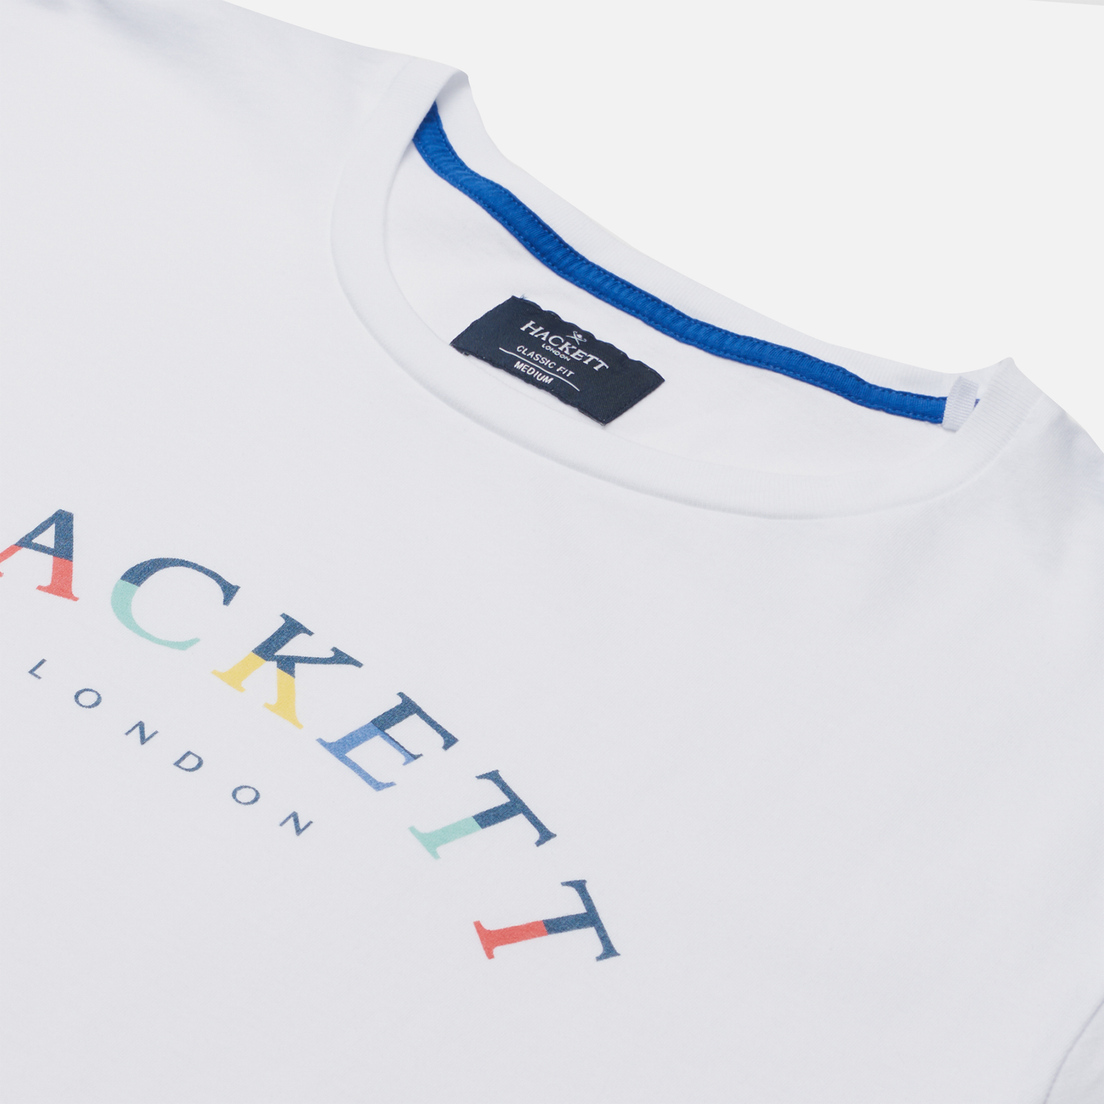 Hackett Мужская футболка London Color Logo